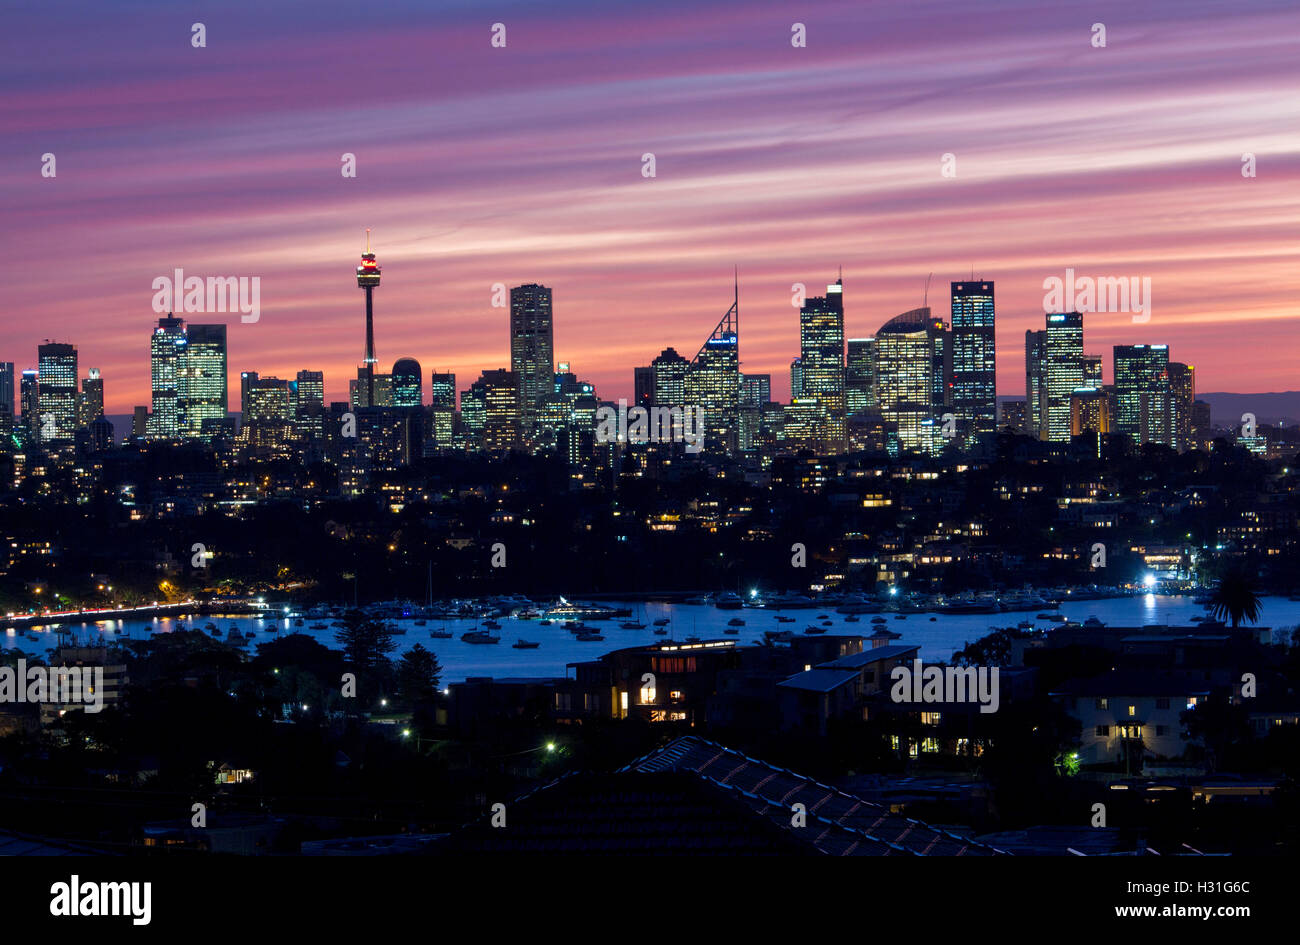 Skyline von Sydney bei Sonnenuntergang Dämmerung Twilight Nacht mit Rose Bay im Vordergrund Eastern Suburbs Sydney NSW Australia Stockfoto